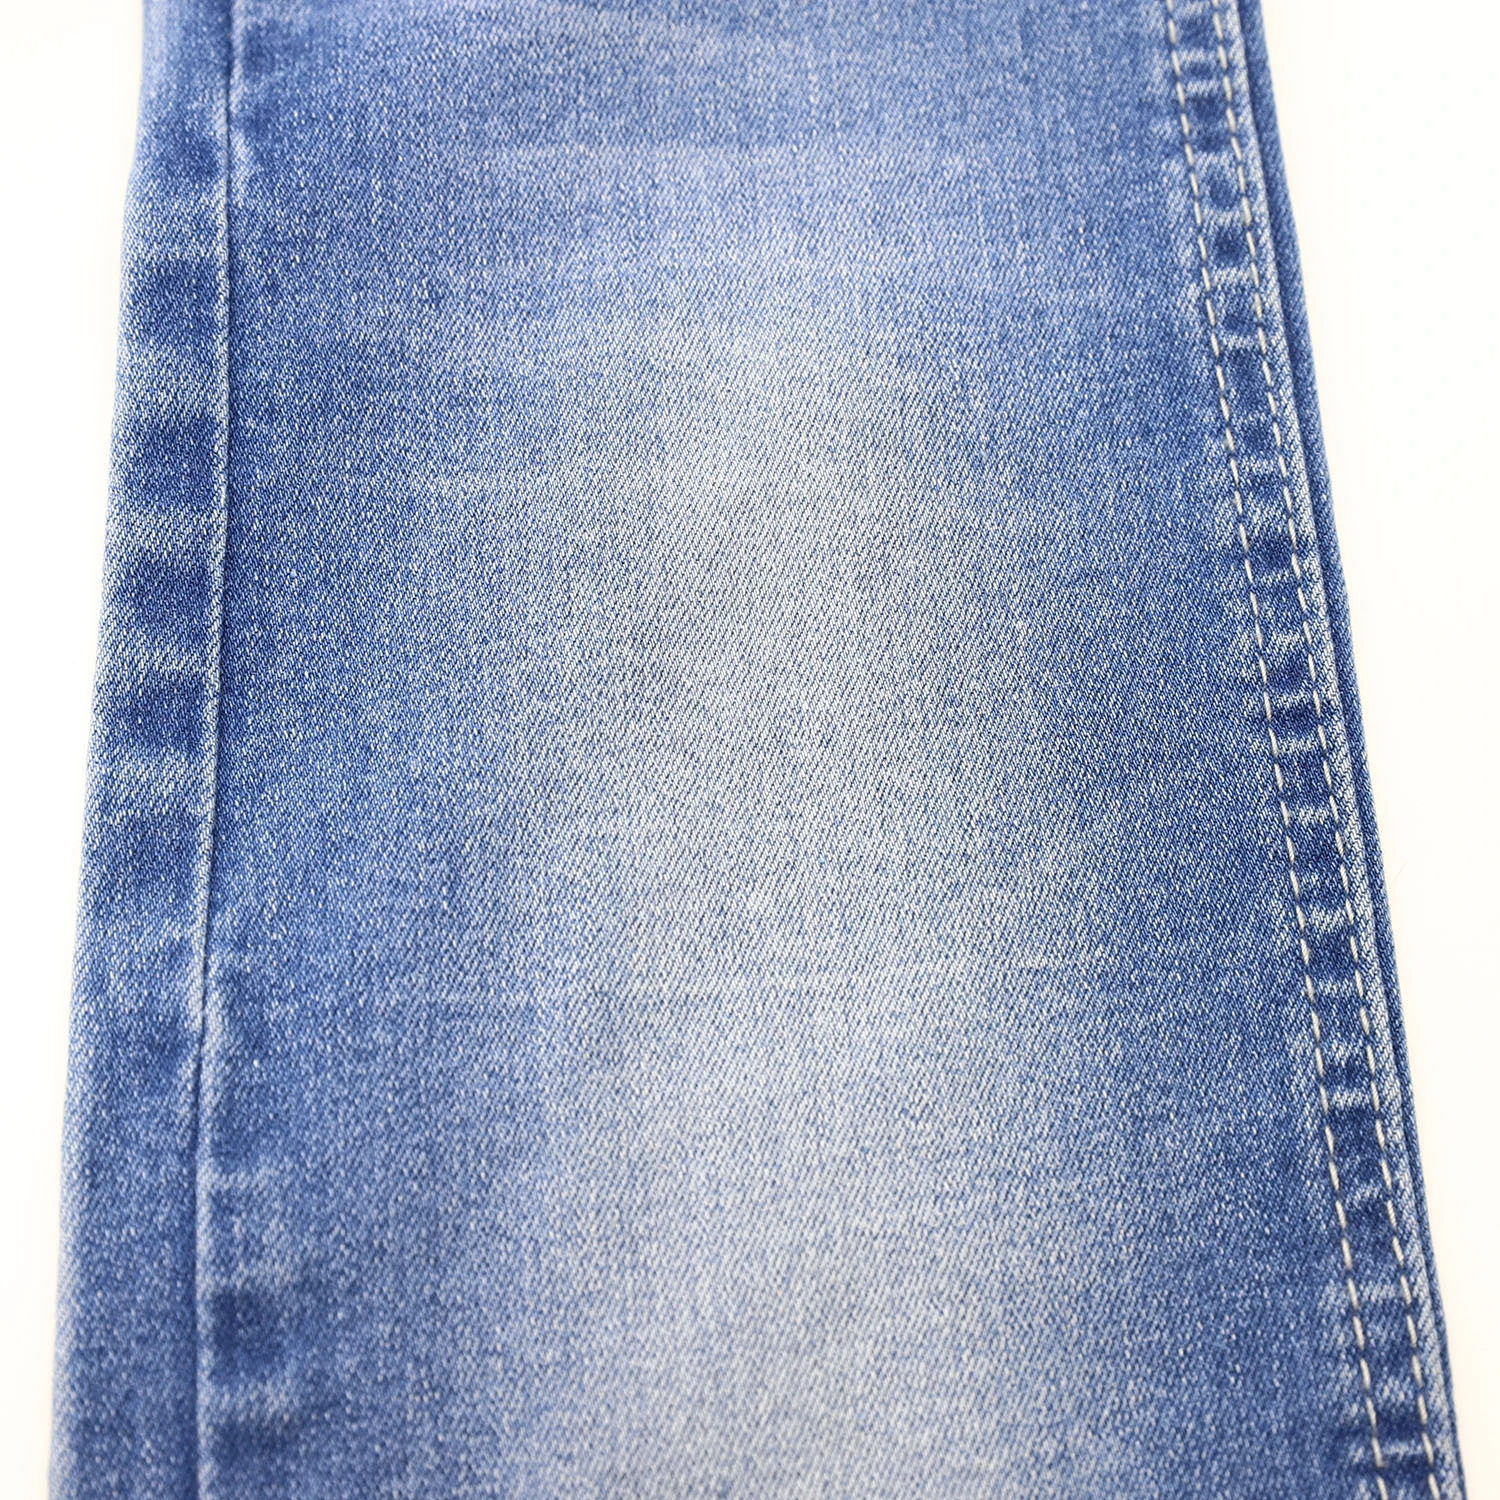 205F-3 10.4oz 10*21 Indigo Color High Stretch Cotton Denim Fabric for Jeans 7